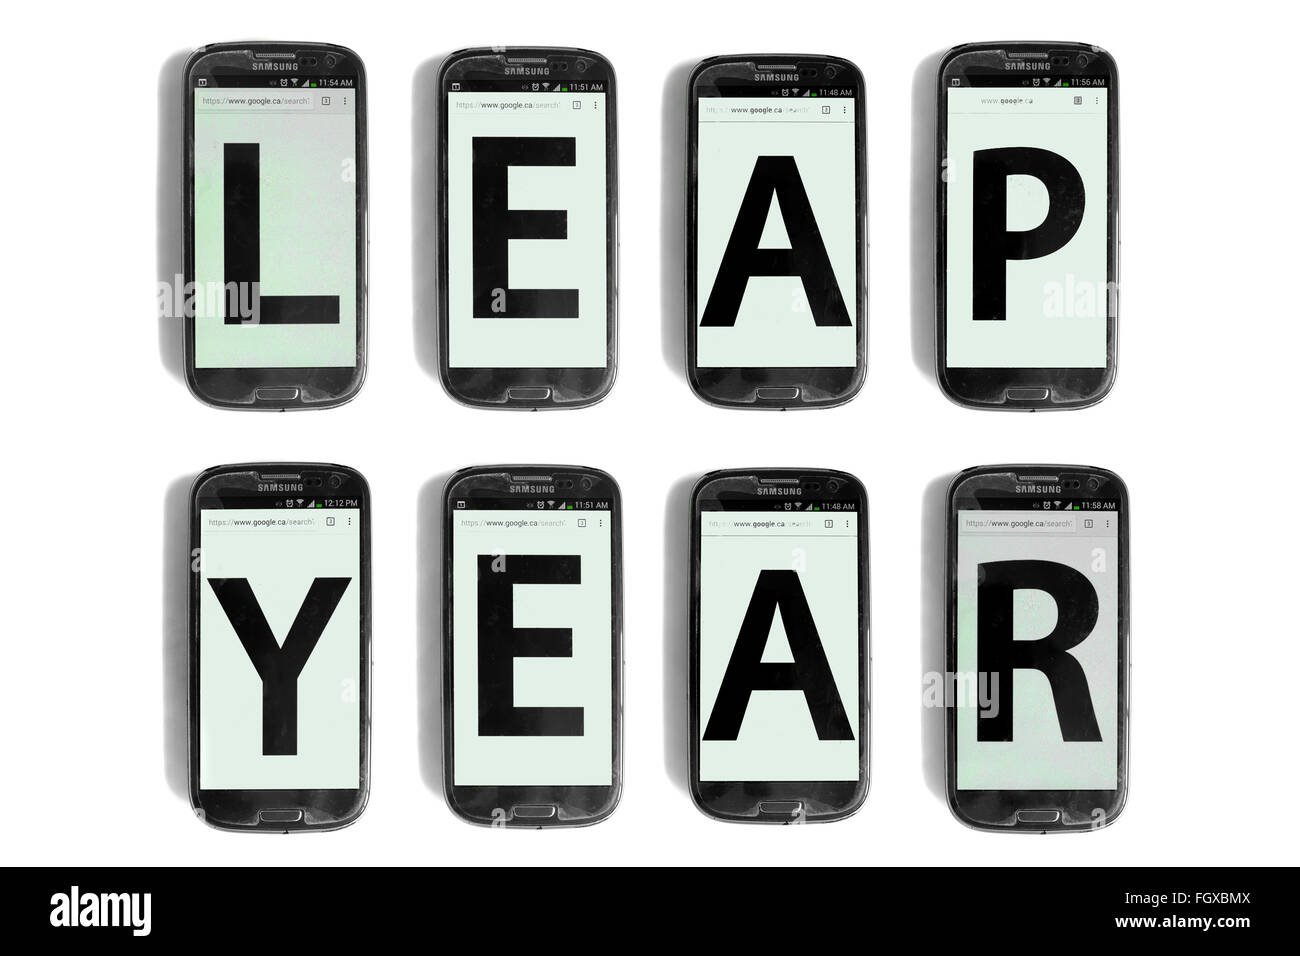 Anno bisestile scritto su schermi di smartphone fotografati contro uno sfondo bianco. Foto Stock